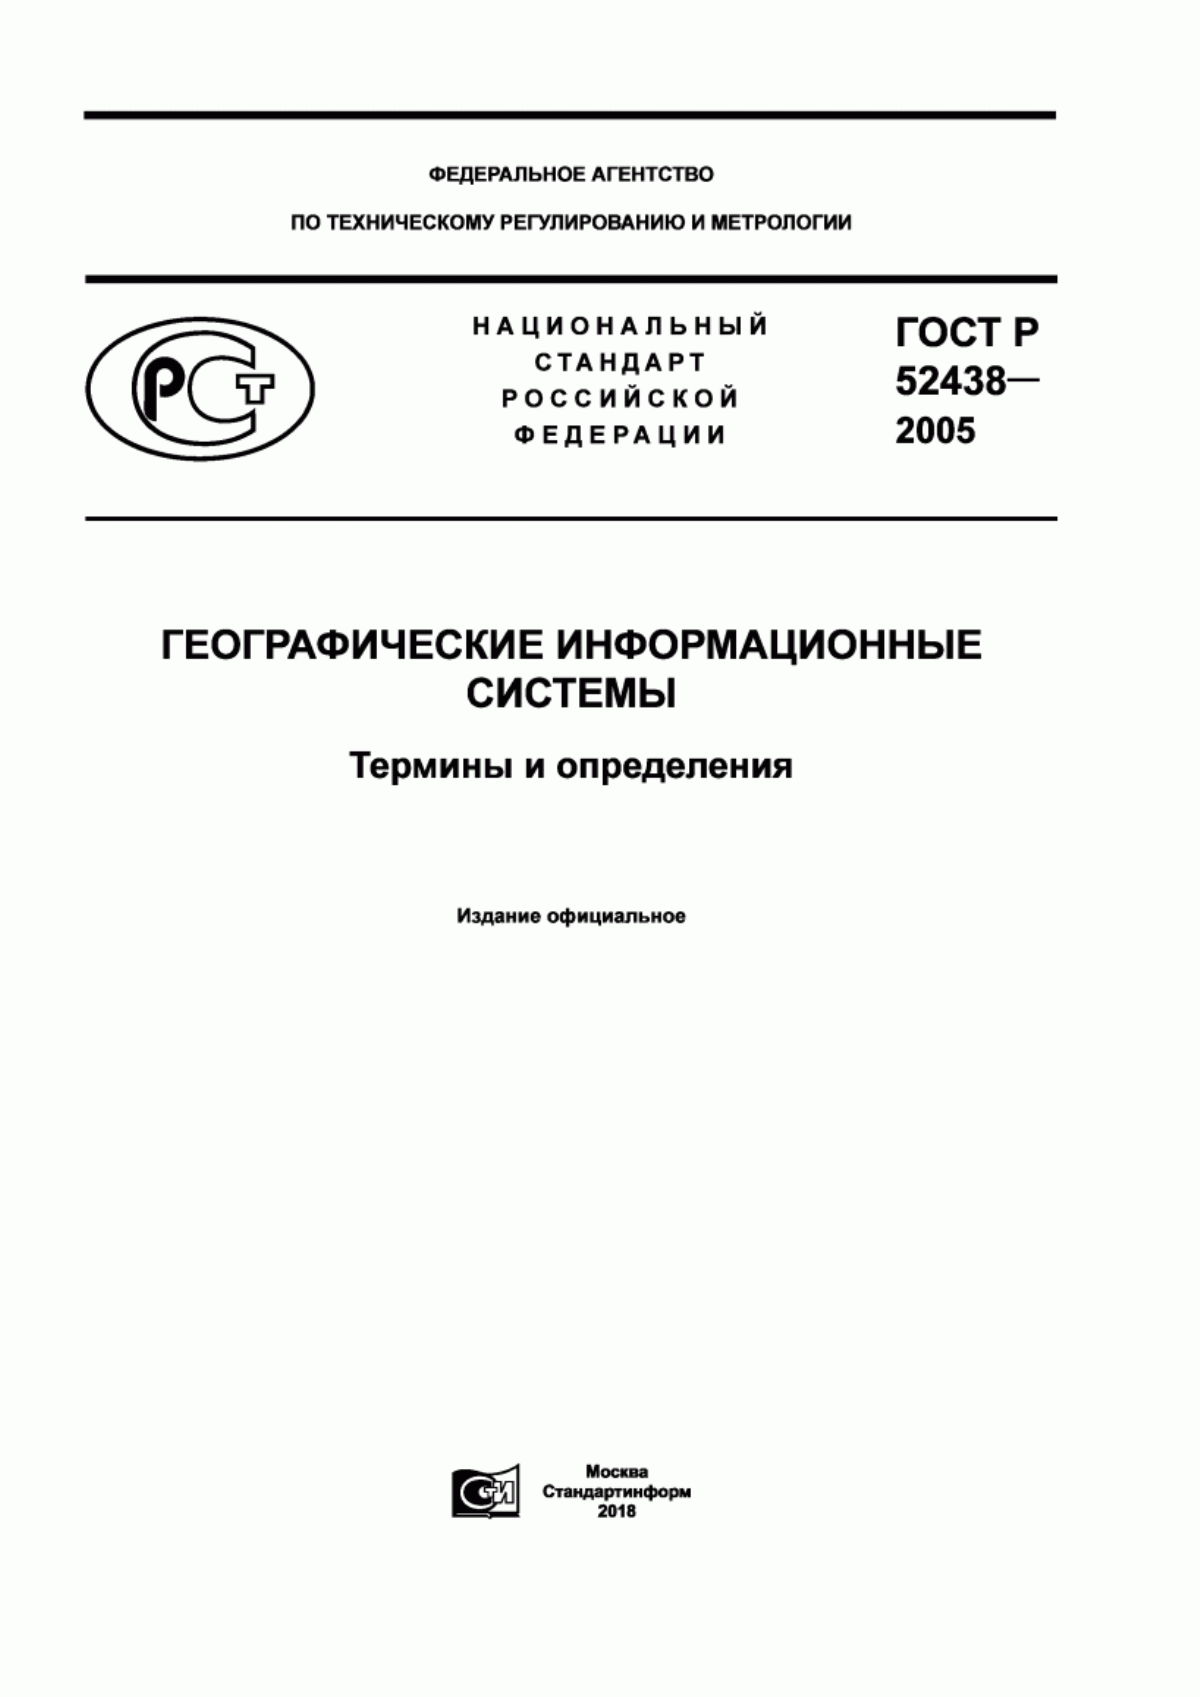 ГОСТ Р 52438-2005 Географические информационные системы. Термины и определения